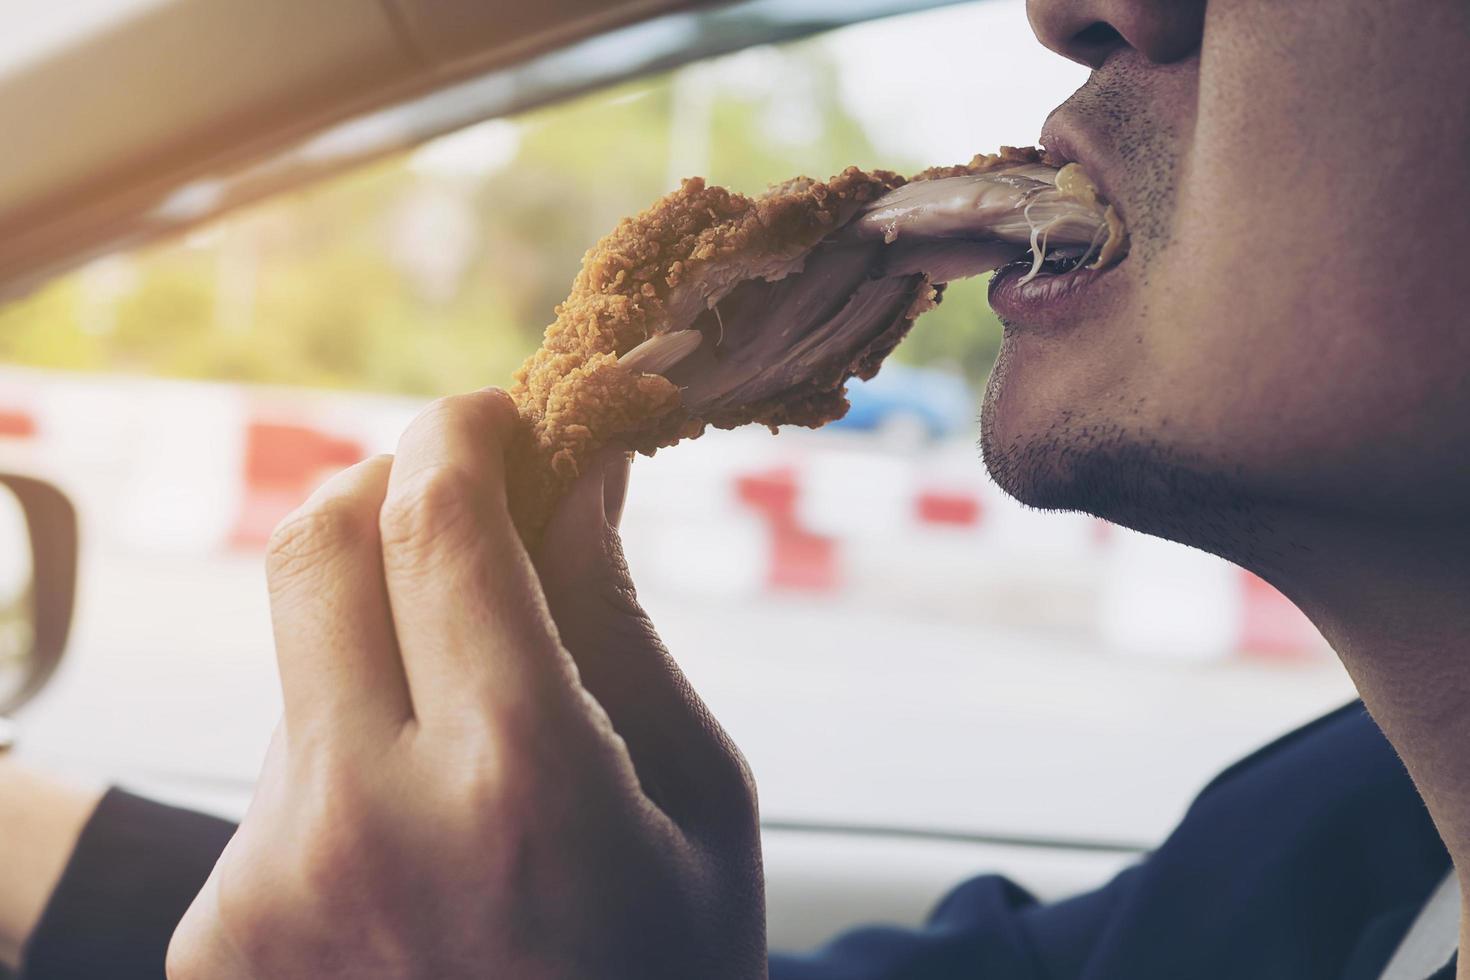 homem de negócios dirigindo carro enquanto come frango frito perigosamente foto